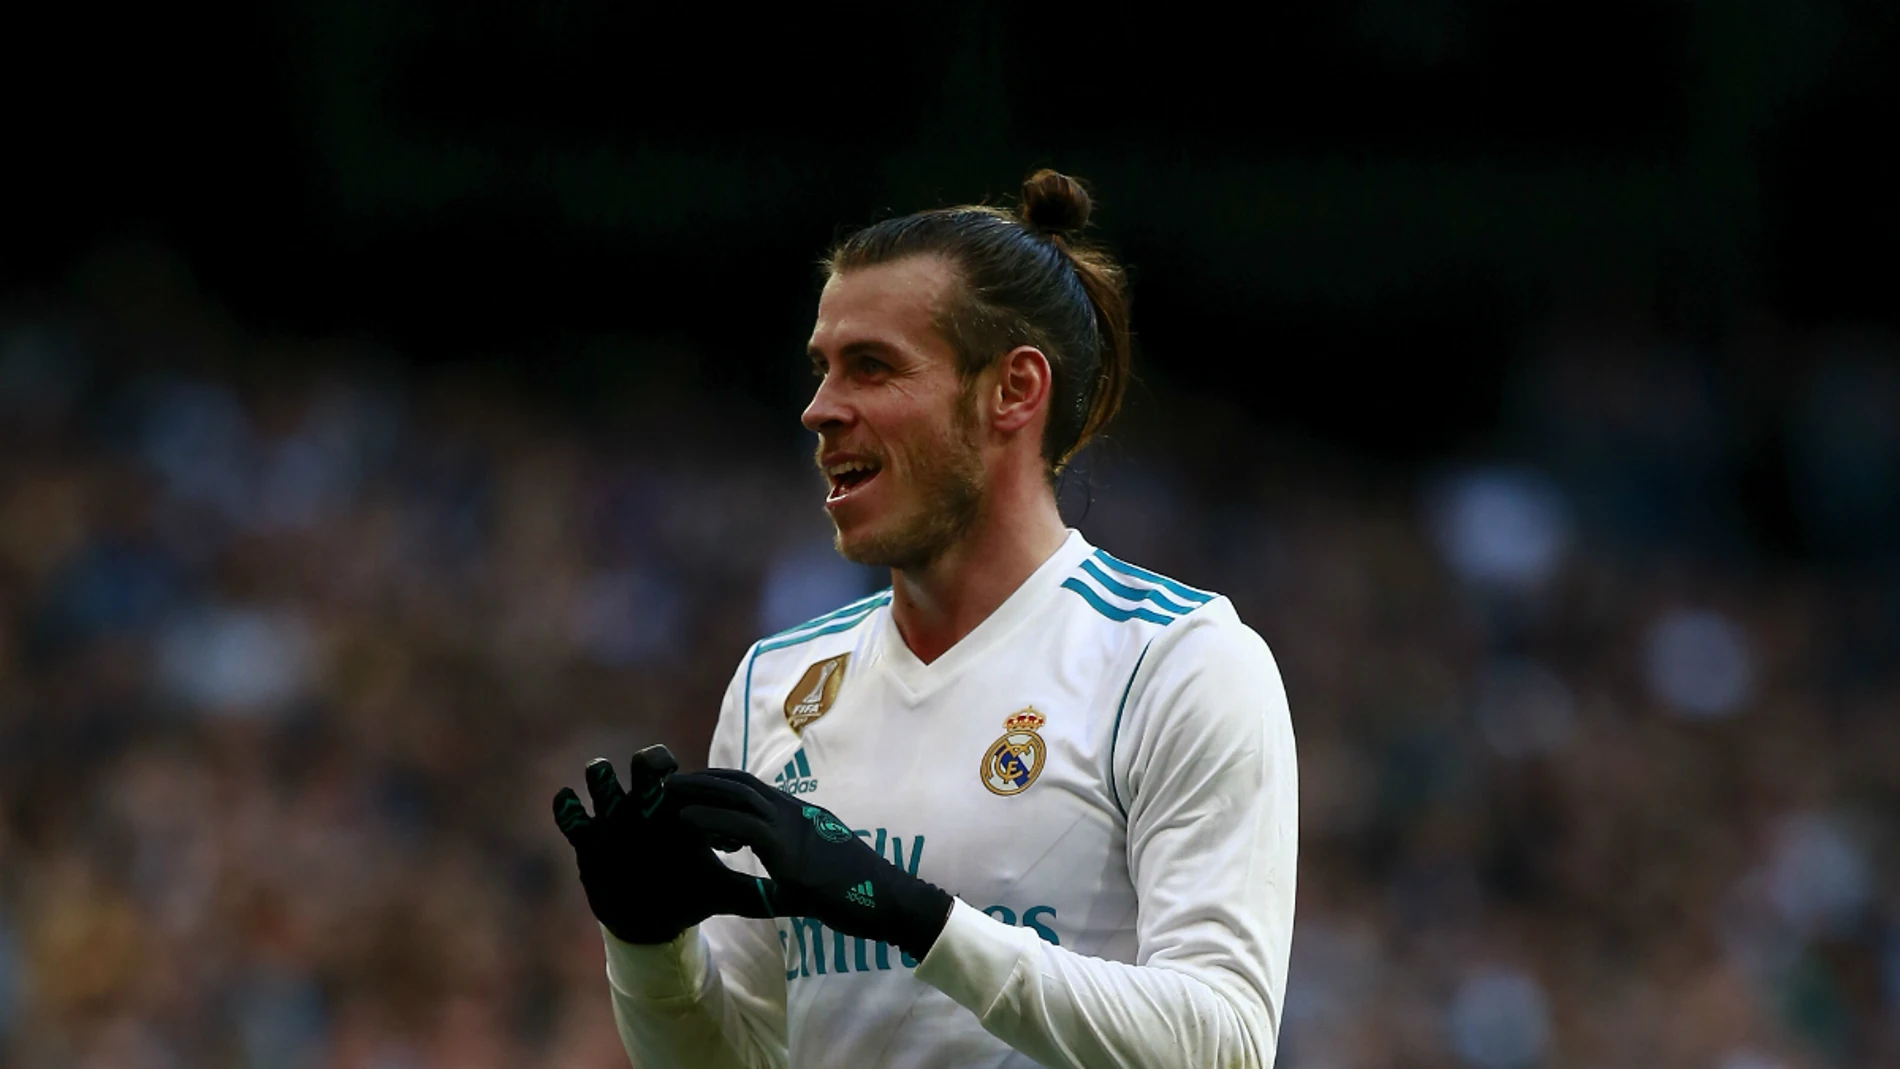 Bale celebra un gol con el Real Madrid